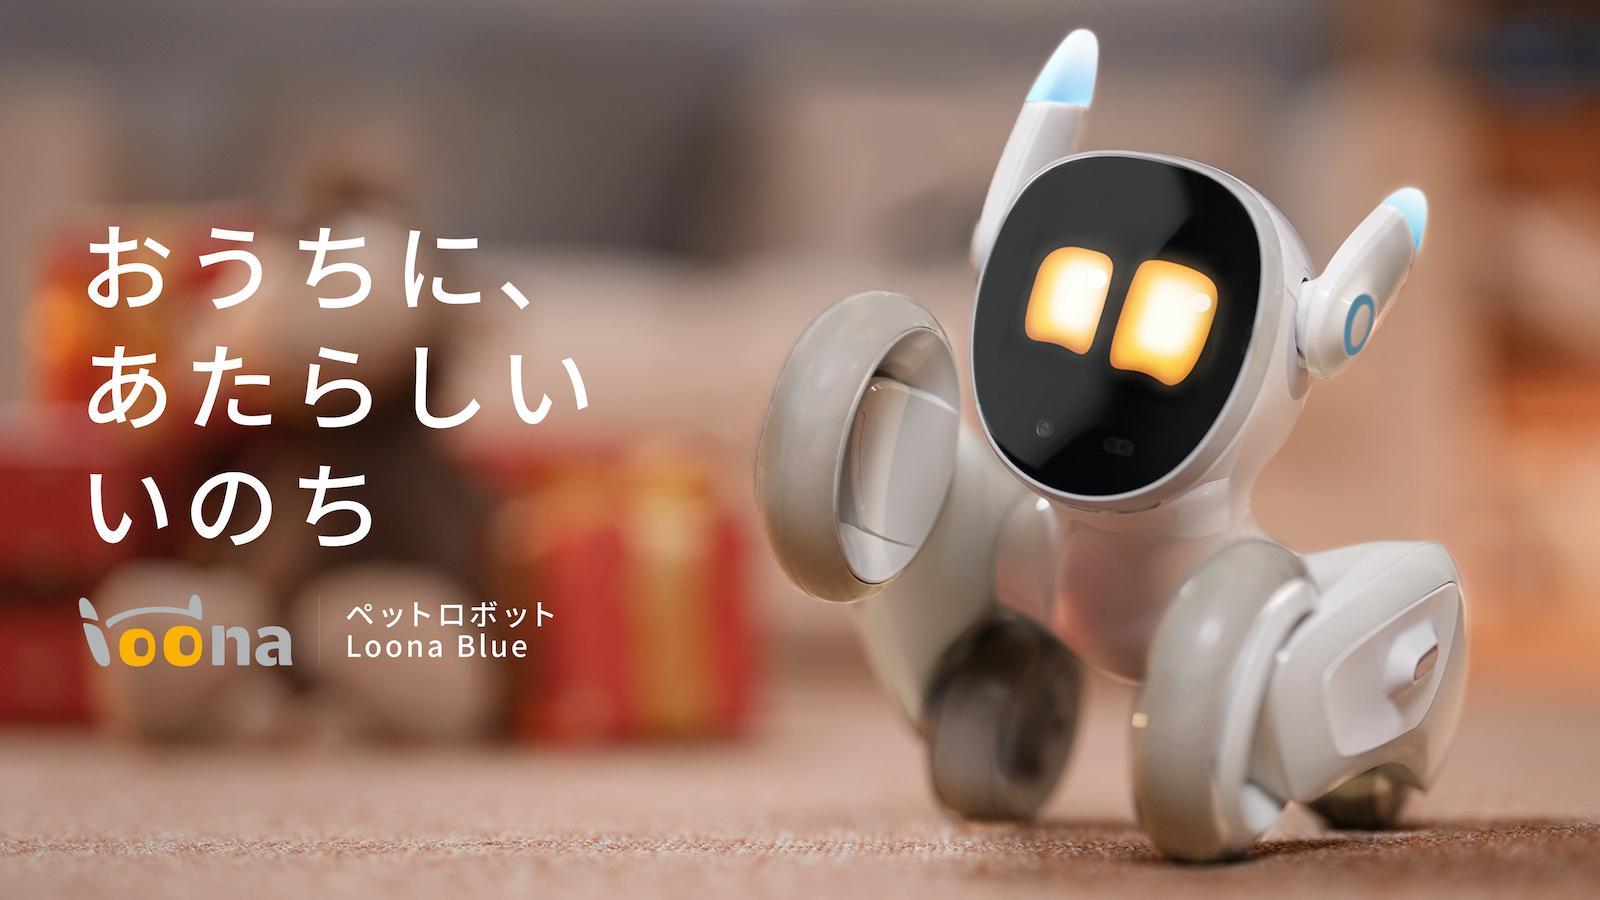 ChatGPTなどの最先端技術を活用、本物のペットのように感情豊かなペットロボット「Loona Blue」が登場 イメージ画像